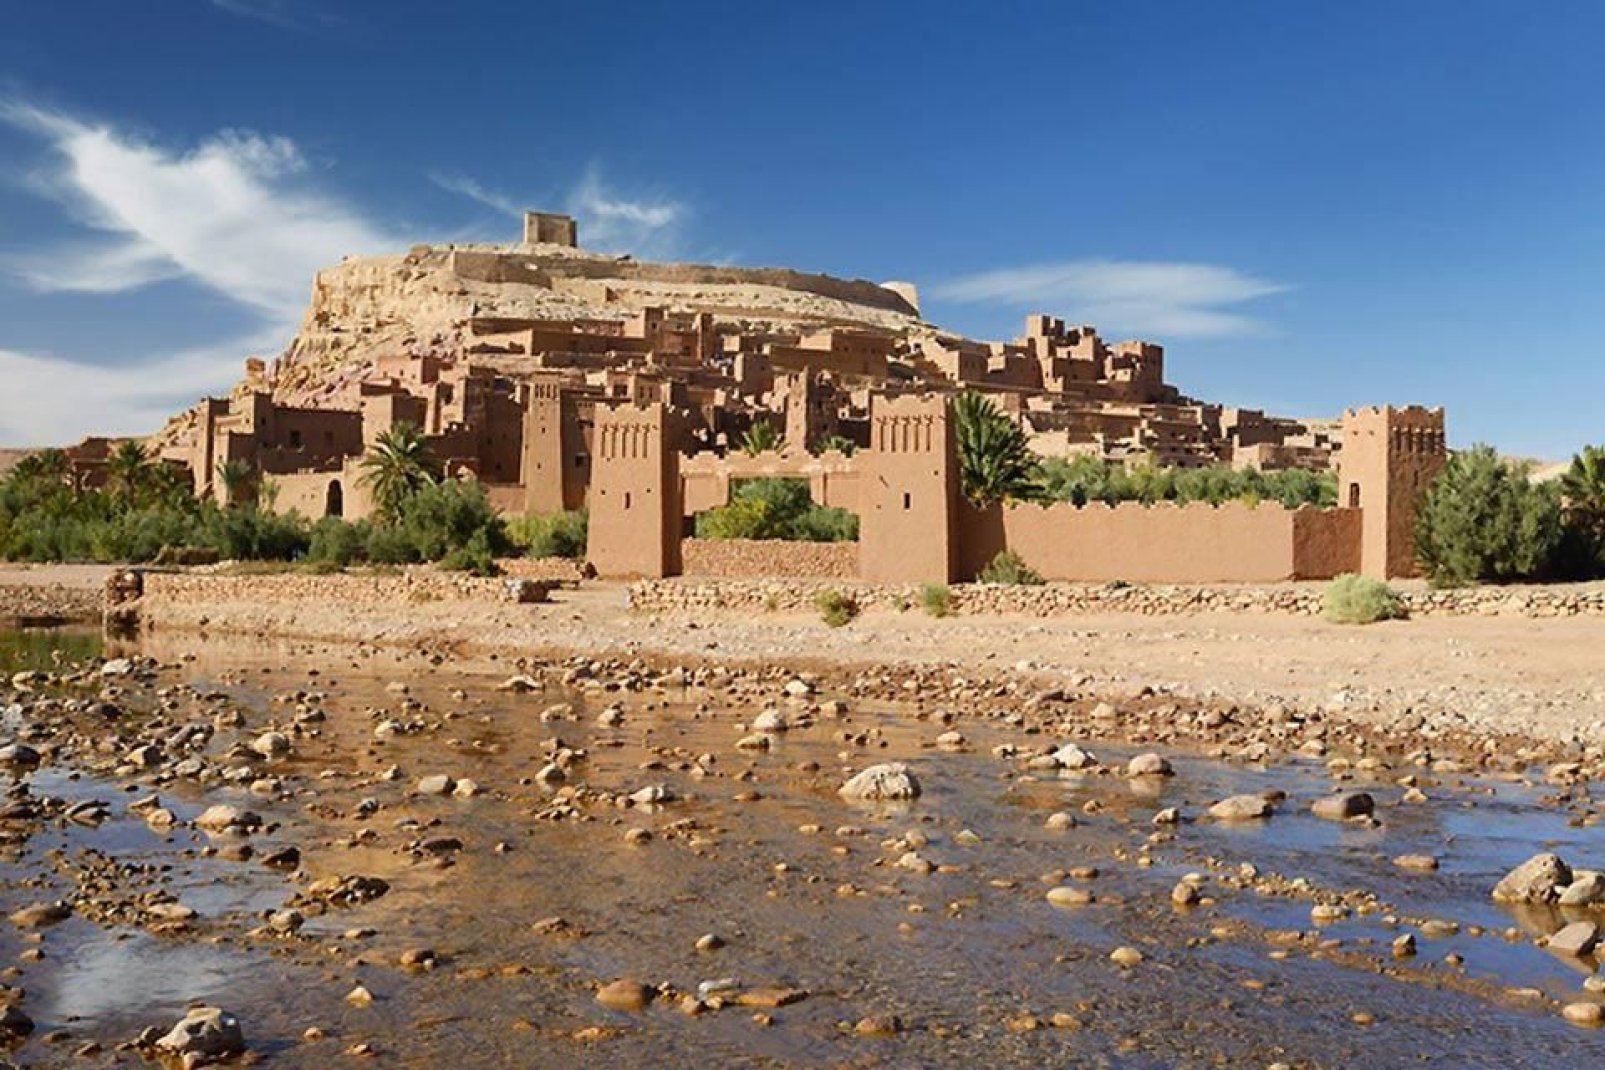 Ville étape avant le désert, Ouarzazate n'a pas vraiment d'intérêt en soi. Les alentours, valent un coup d'œil.